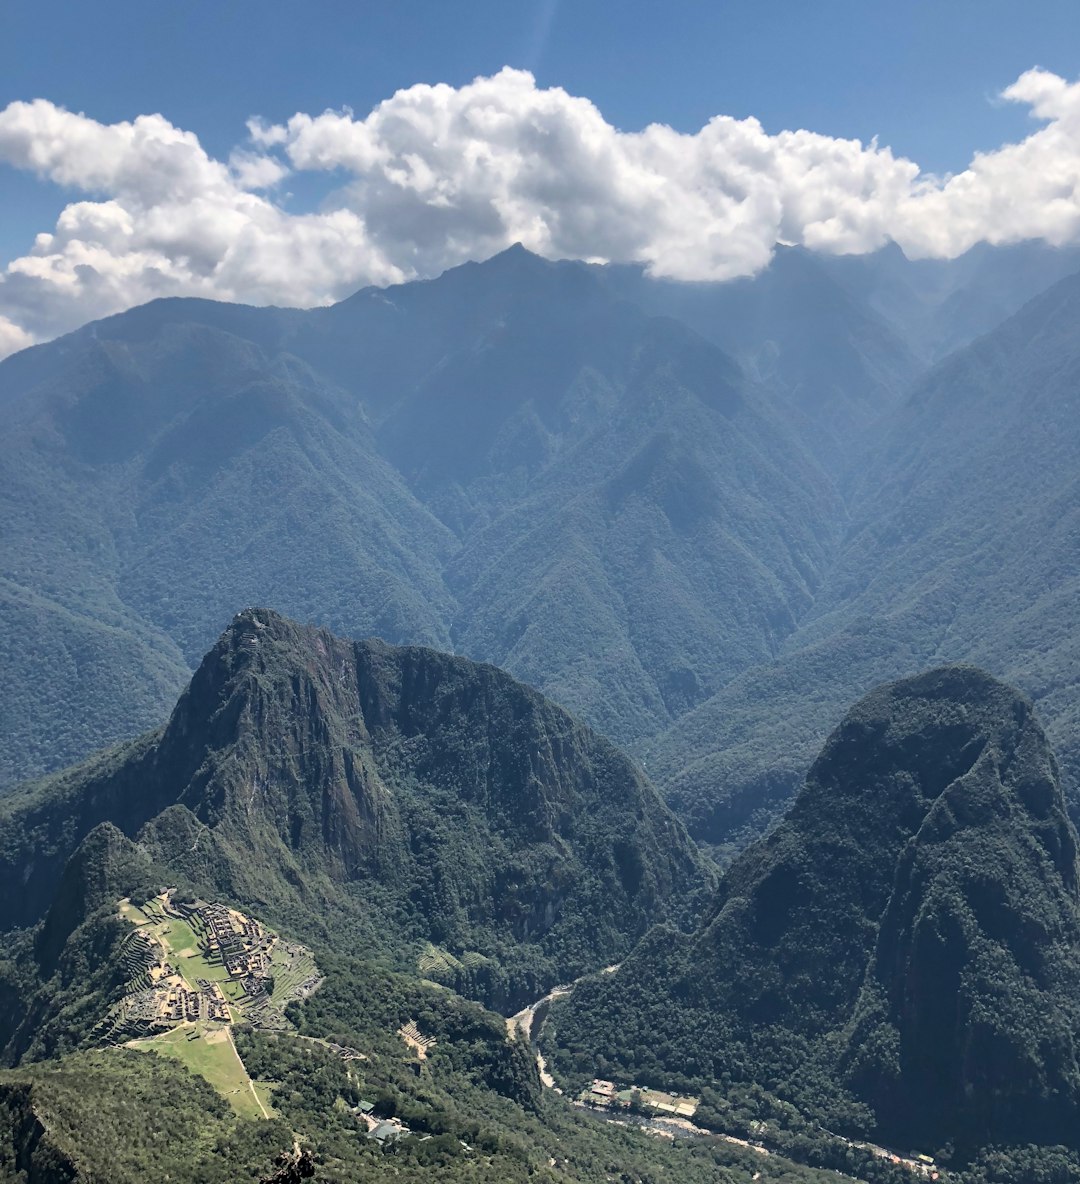 Hill station photo spot Mountain Machu Picchu Urubamba